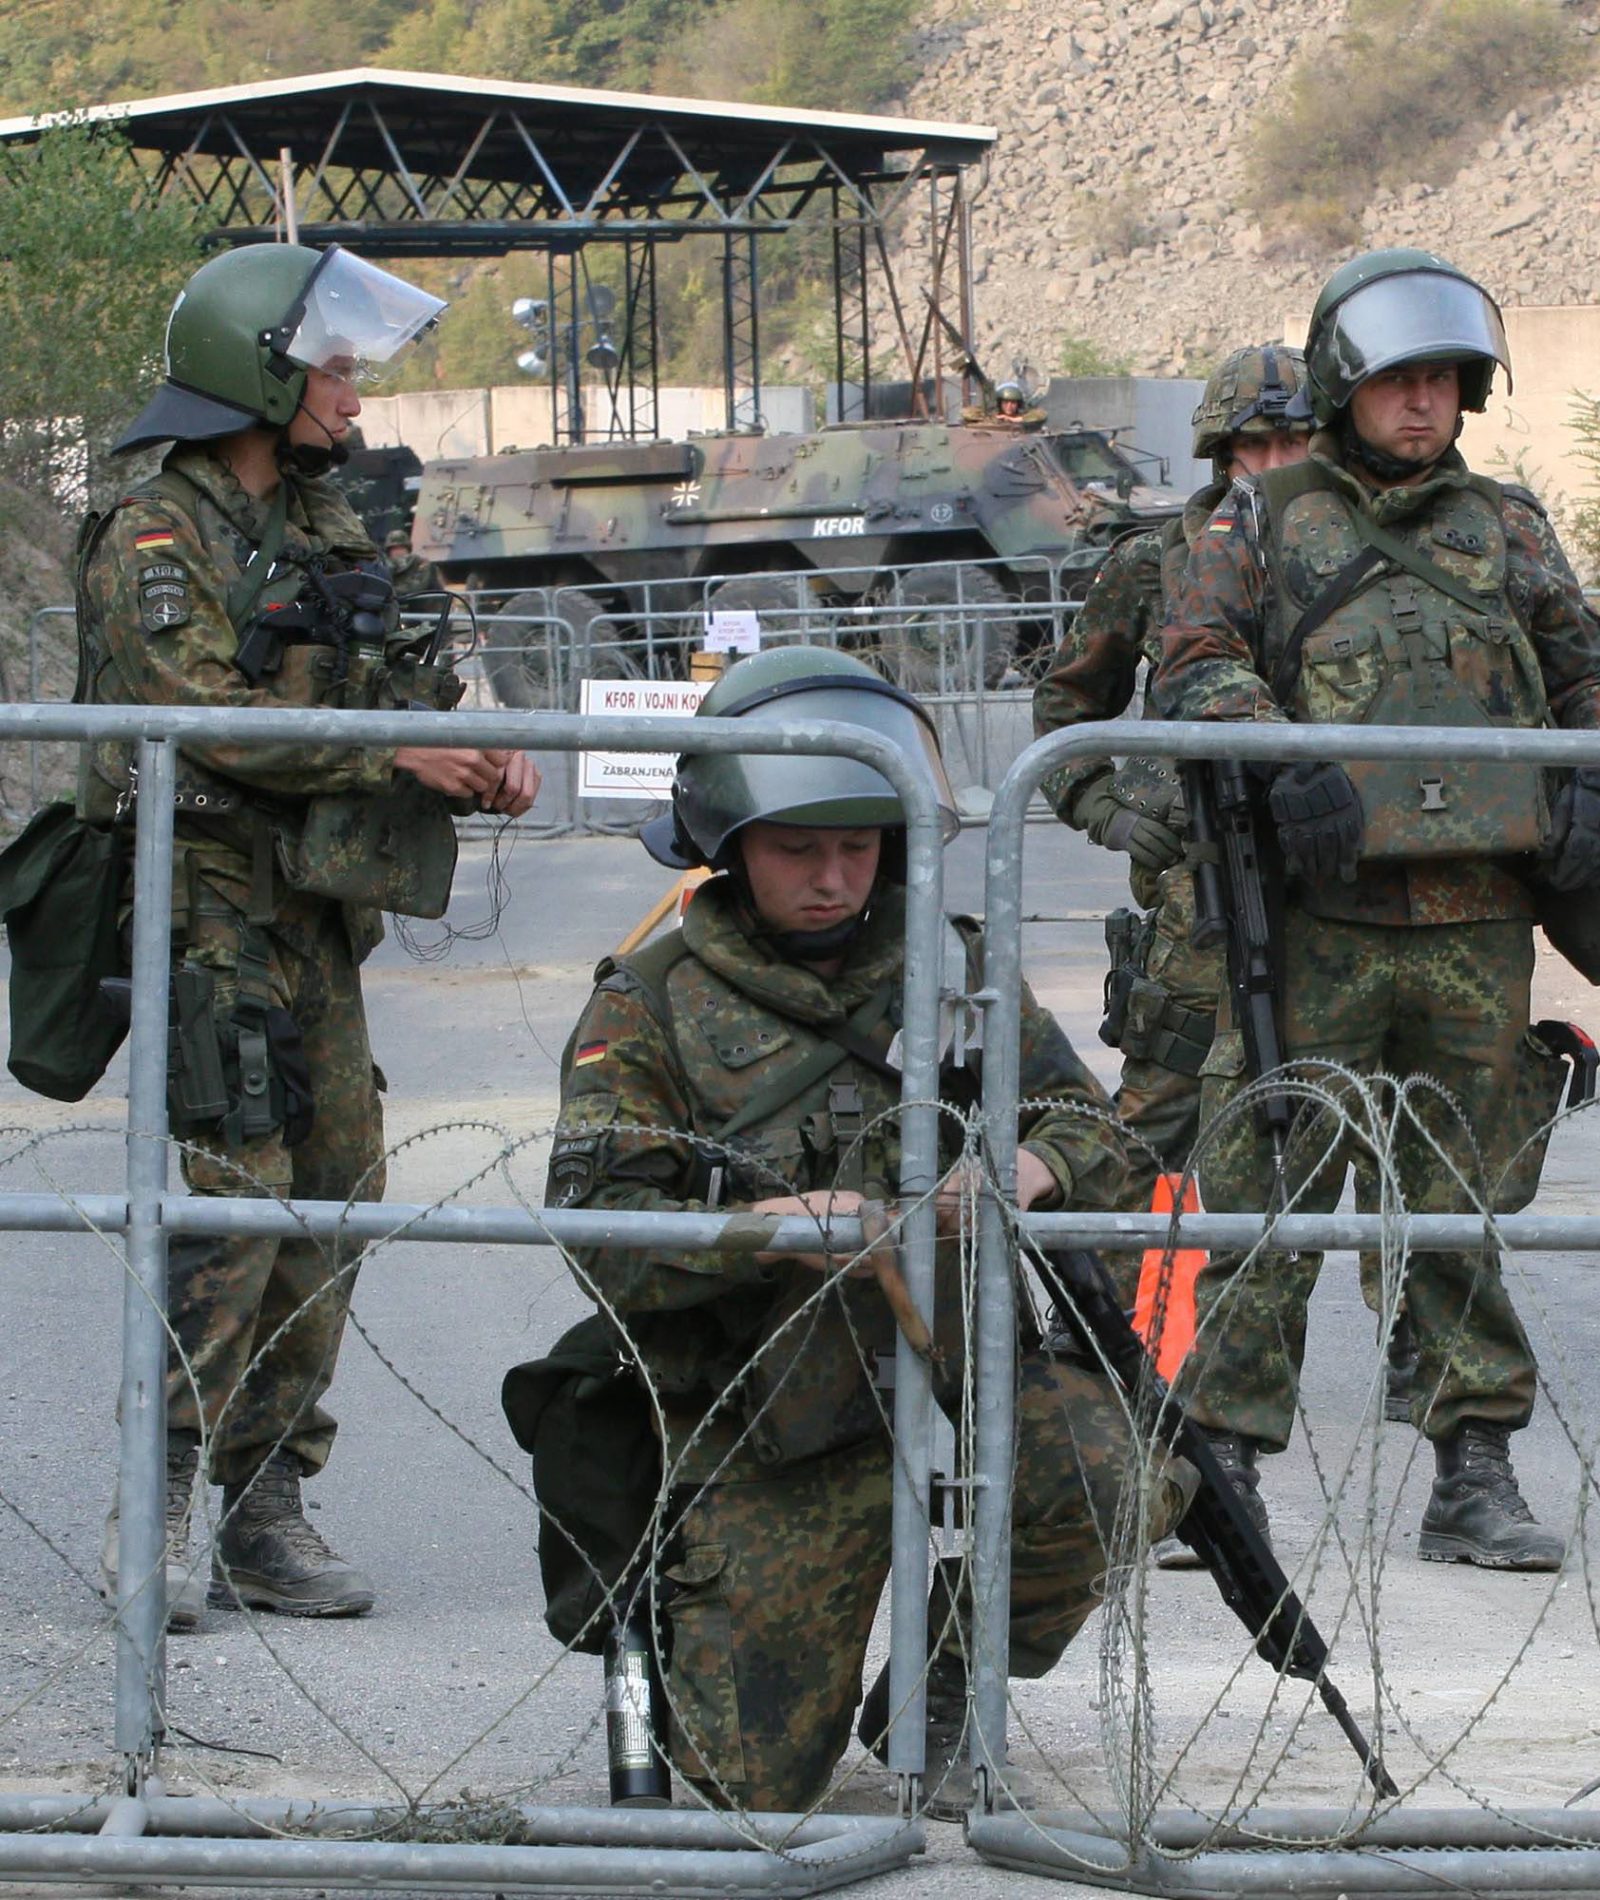 Pritina, 16.9.2011 - Kosovski carinici i policajci, zajedno s pripadnicima pravosudne misije UN-a (Eulex), rasporeðeni su u petak ujutro na graniènim prijelazima na sjeveru Kosova, izjavio je kosovski ministar unutarnjih poslova Bajram Rexhepi. Rexhepi je kazao da je operacija izvedena neto prije osam sati i da su slubenici kosovske carine i policije prebaèeni, zajedno s pripadnicima EULEX-a, na graniène prijelaze Jarinje i Brnjak. Na slici pripadnici Kfora iz njemaèkog kontigenta na graniènom prijelazu Jarinje.
foto FaH/ BETAPHOTO/ SASA DJORDJEVIC/ ua